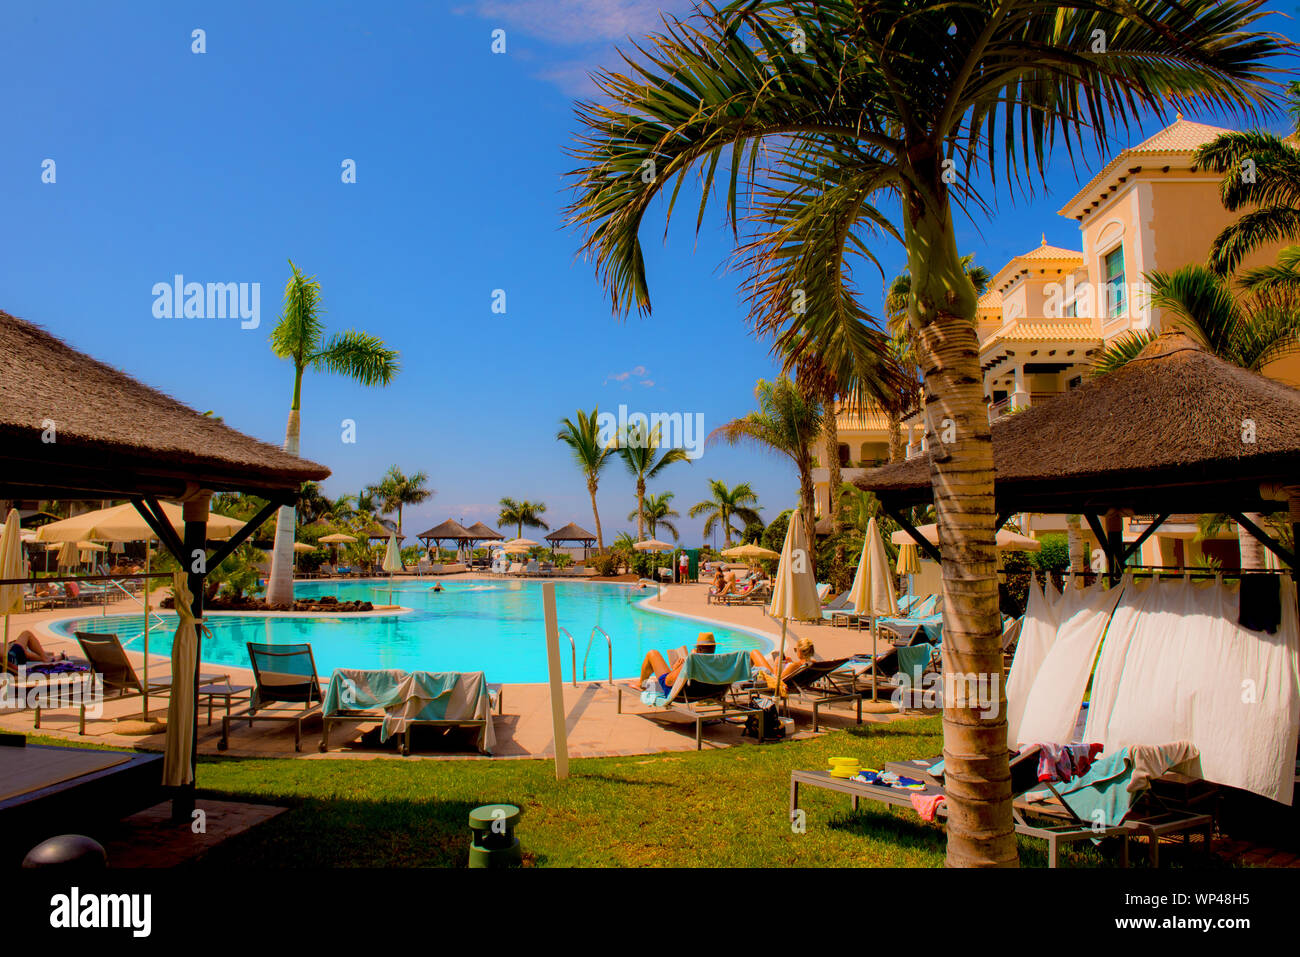 Tenerife, Isole Canarie, Spagna 6 ottobre 2018: Hotel di lusso sulla costa con palme, piscina Polonia turisti non identificati prendere il sole. Foto Stock